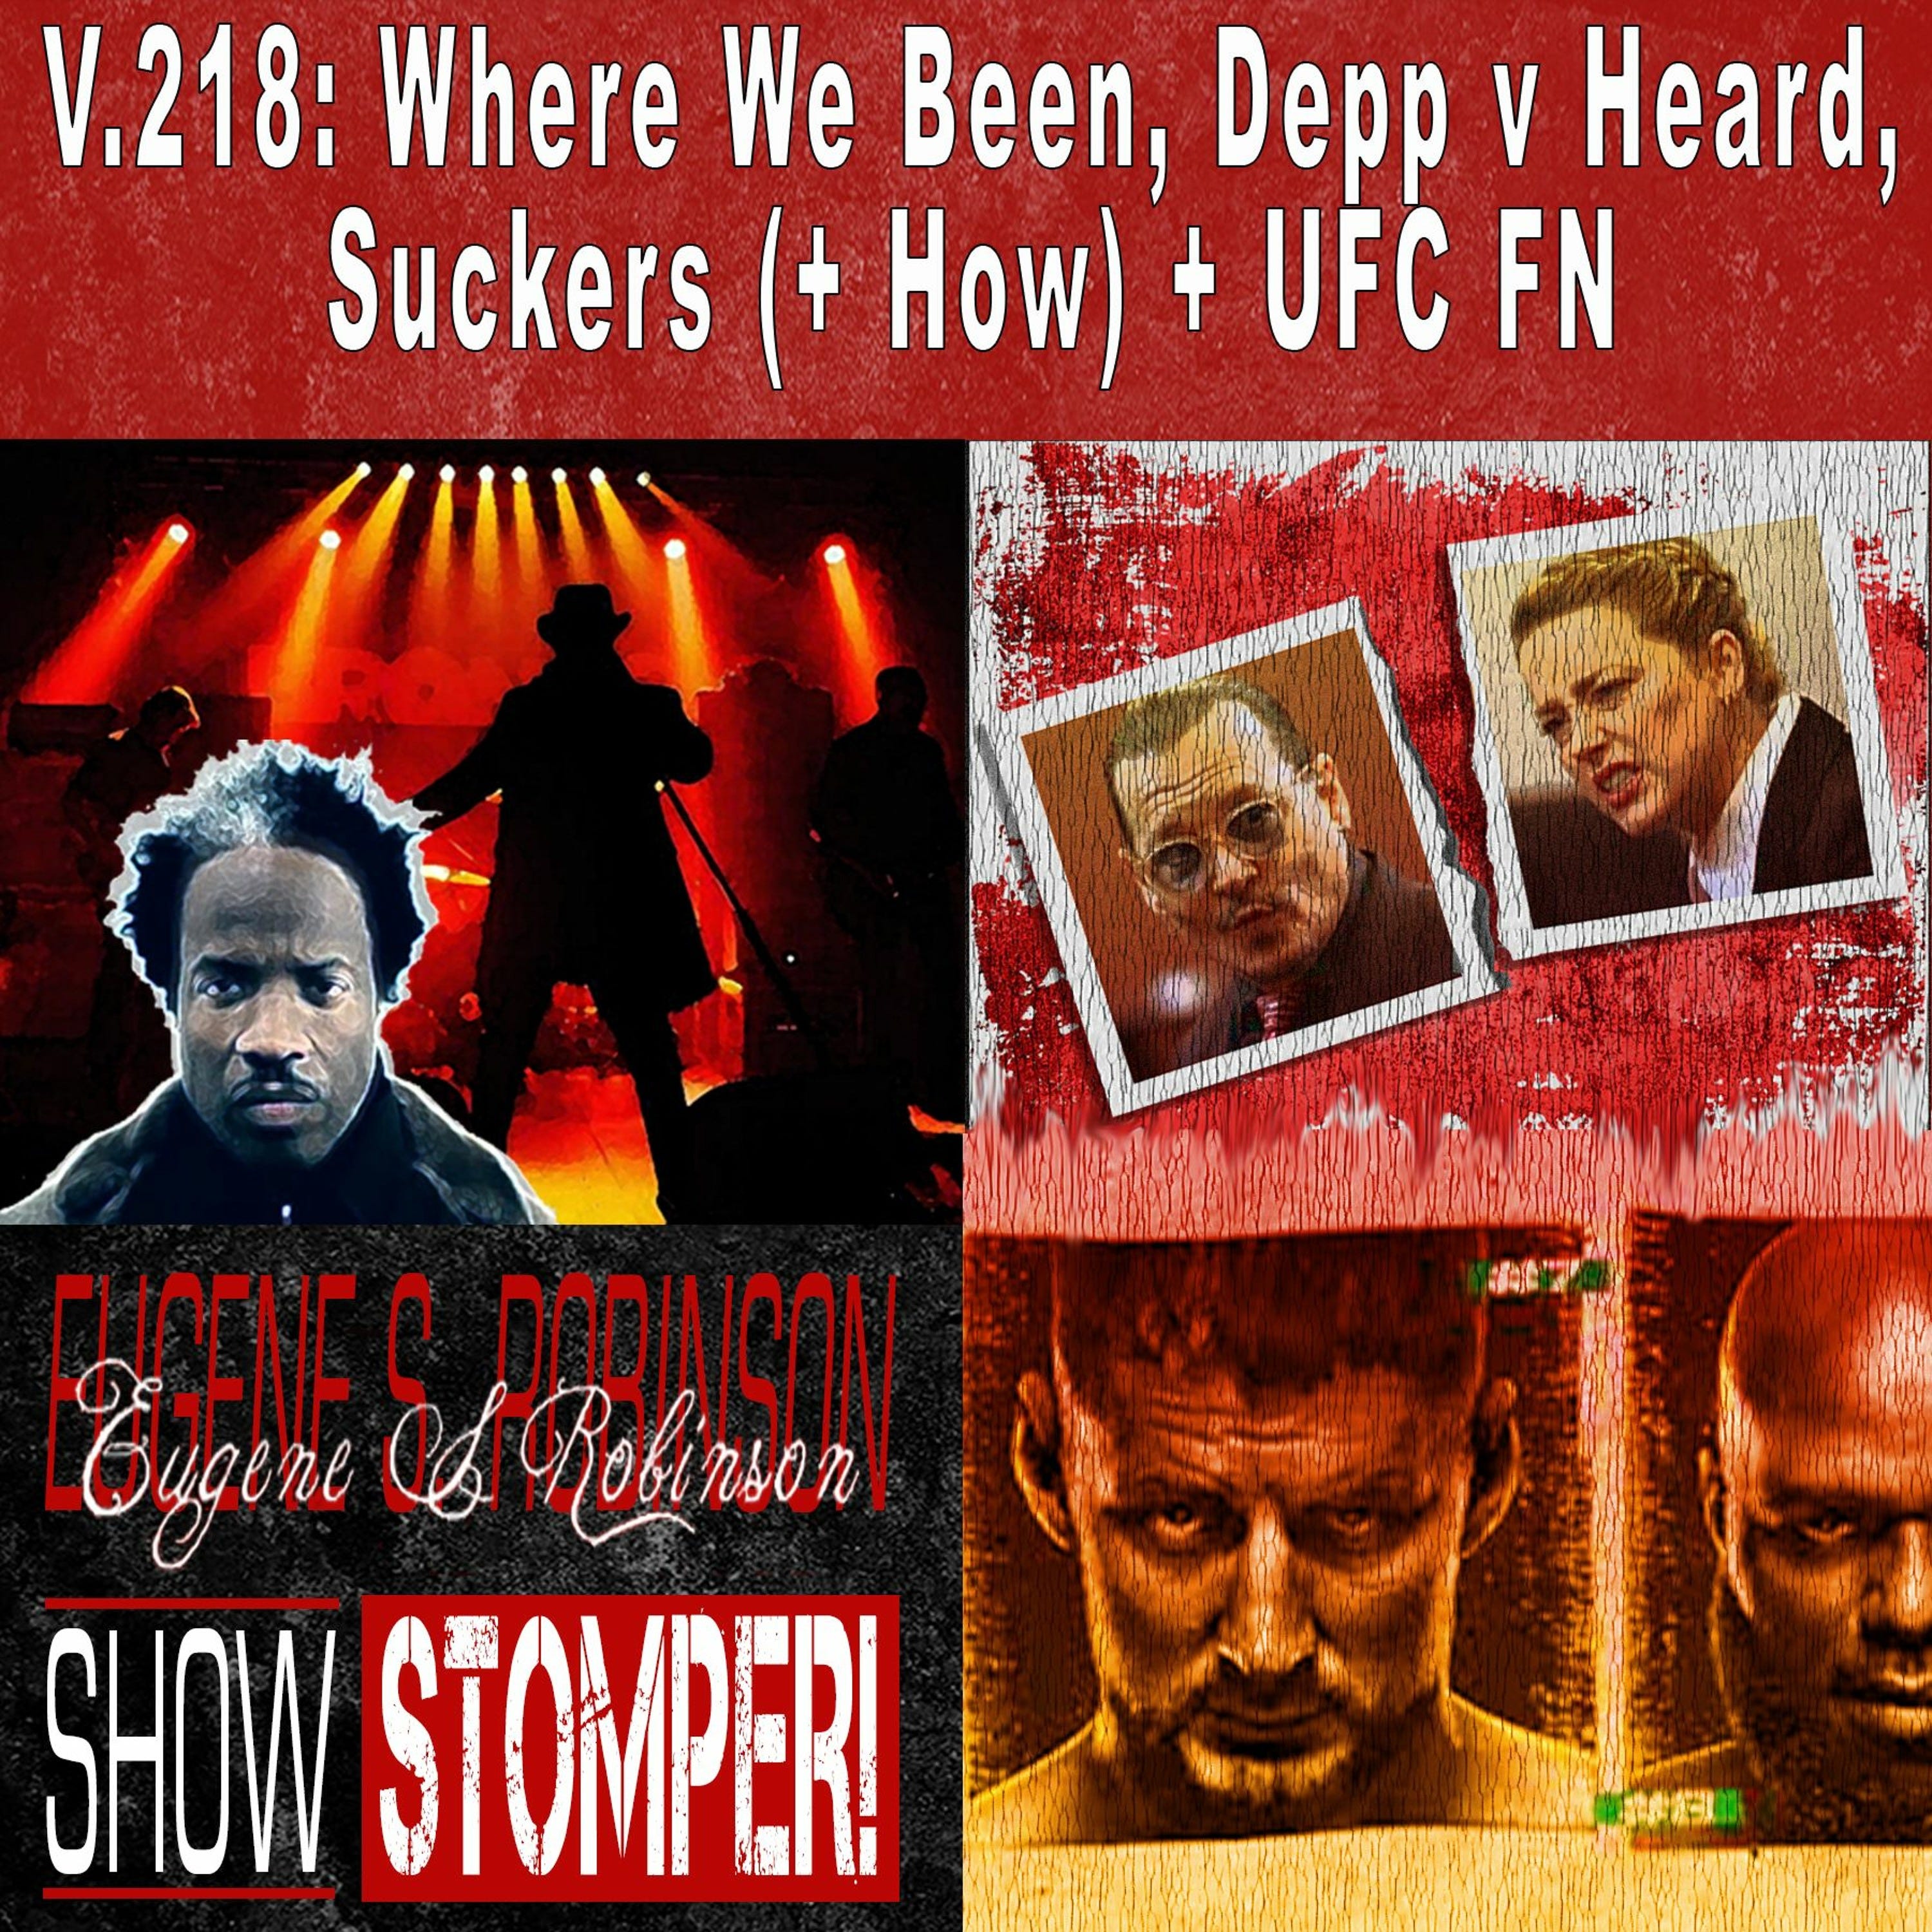 V.218: Where We Been, Depp v Heard, Suckers (+ How) + UFC FN On The Eugene S. Robinson Show Stomper!